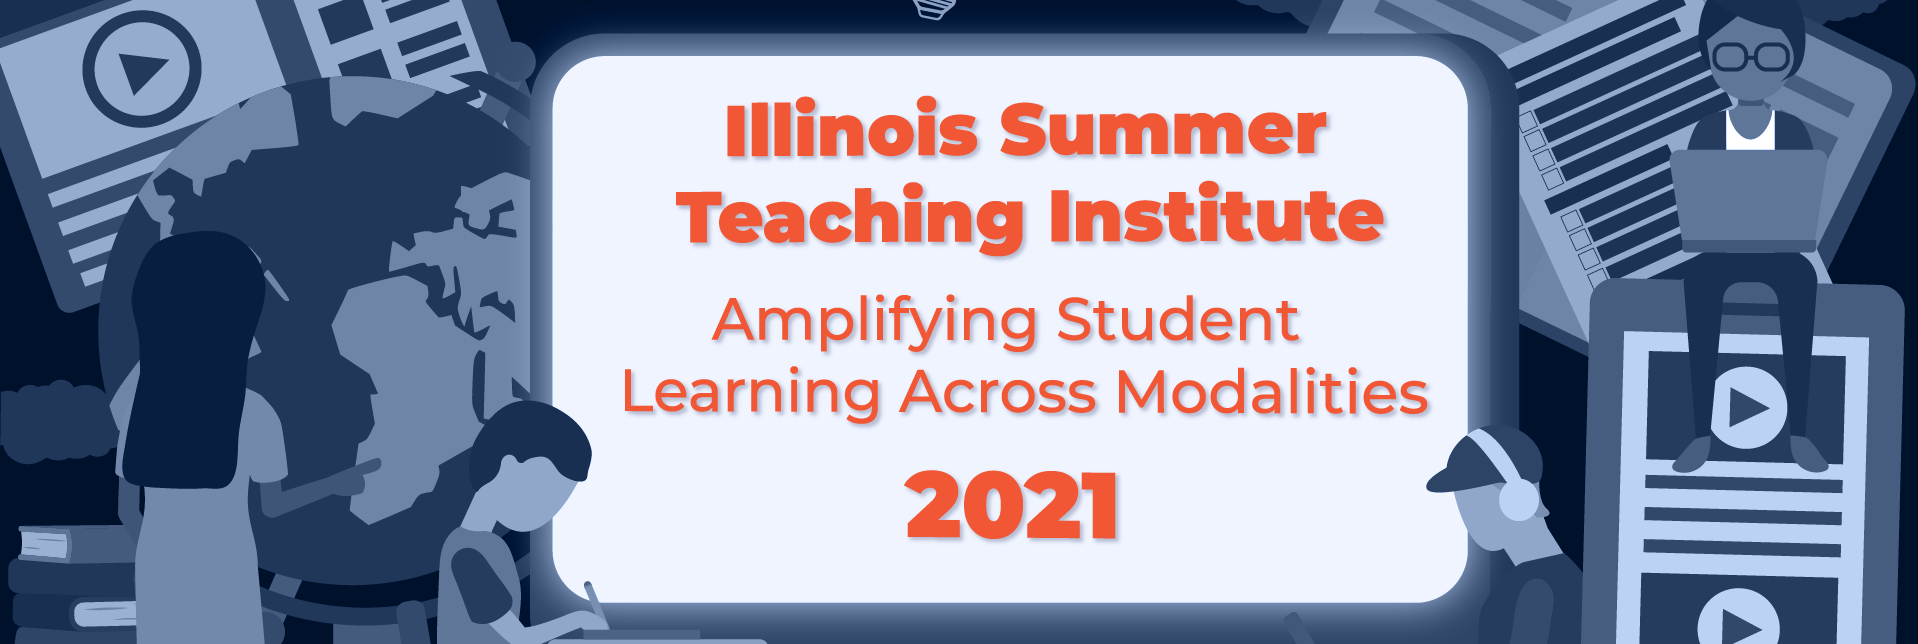 Illinois Summer Teaching Institute 2021 Amplifying Student Learning Across Modalities